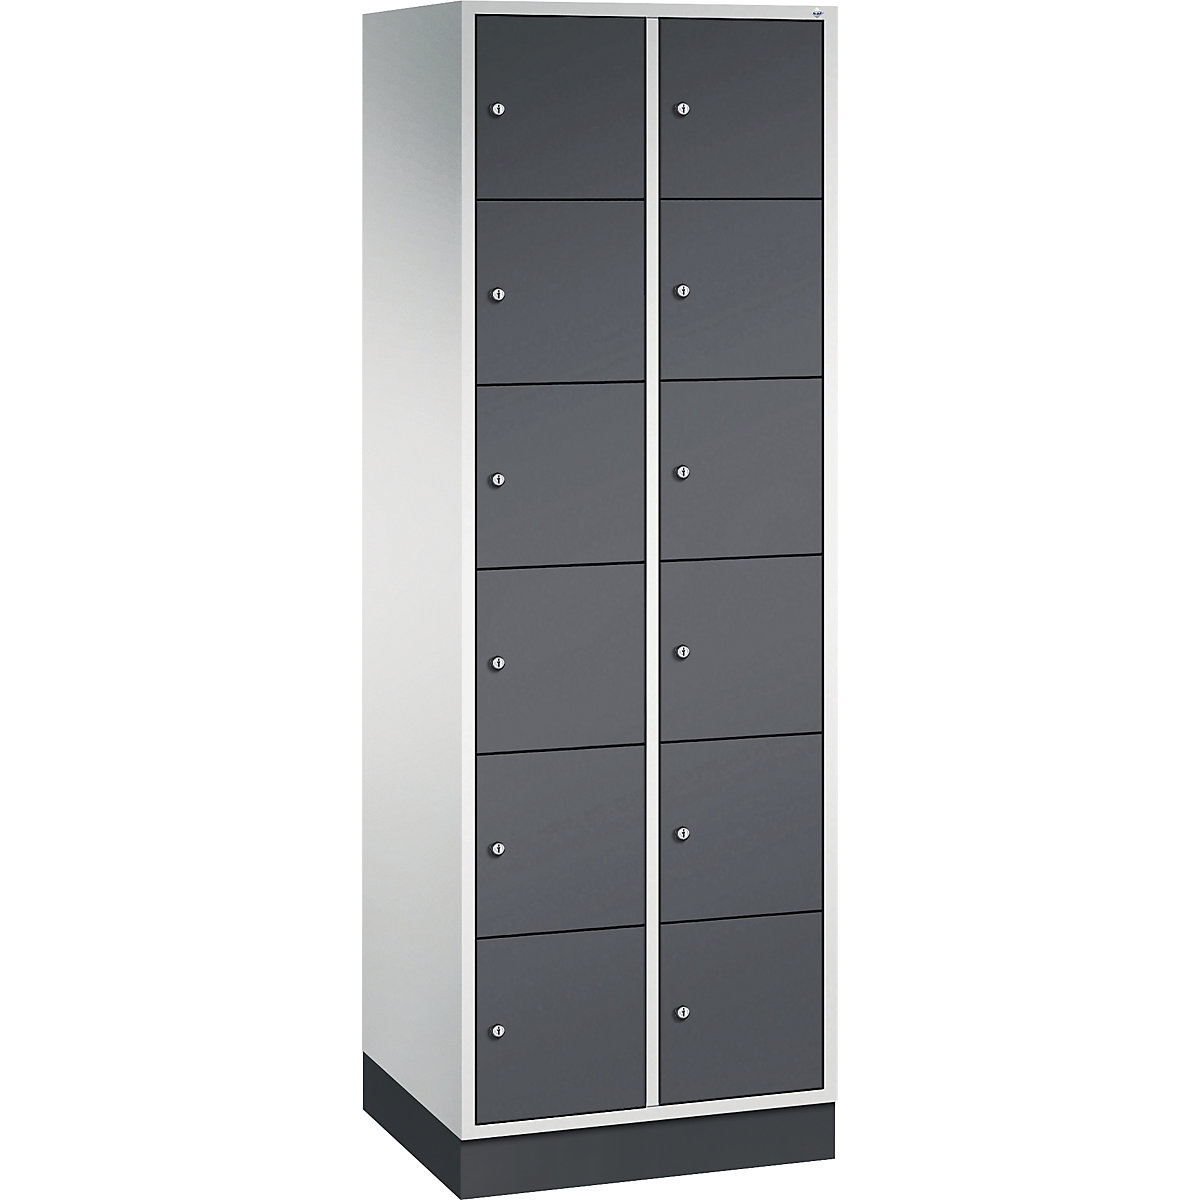 Vestiaire multicases en acier INTRO, casiers hauteur 285 mm – C+P, l x p 620 x 500 mm, 12 casiers, corps gris clair, portes gris noir-8